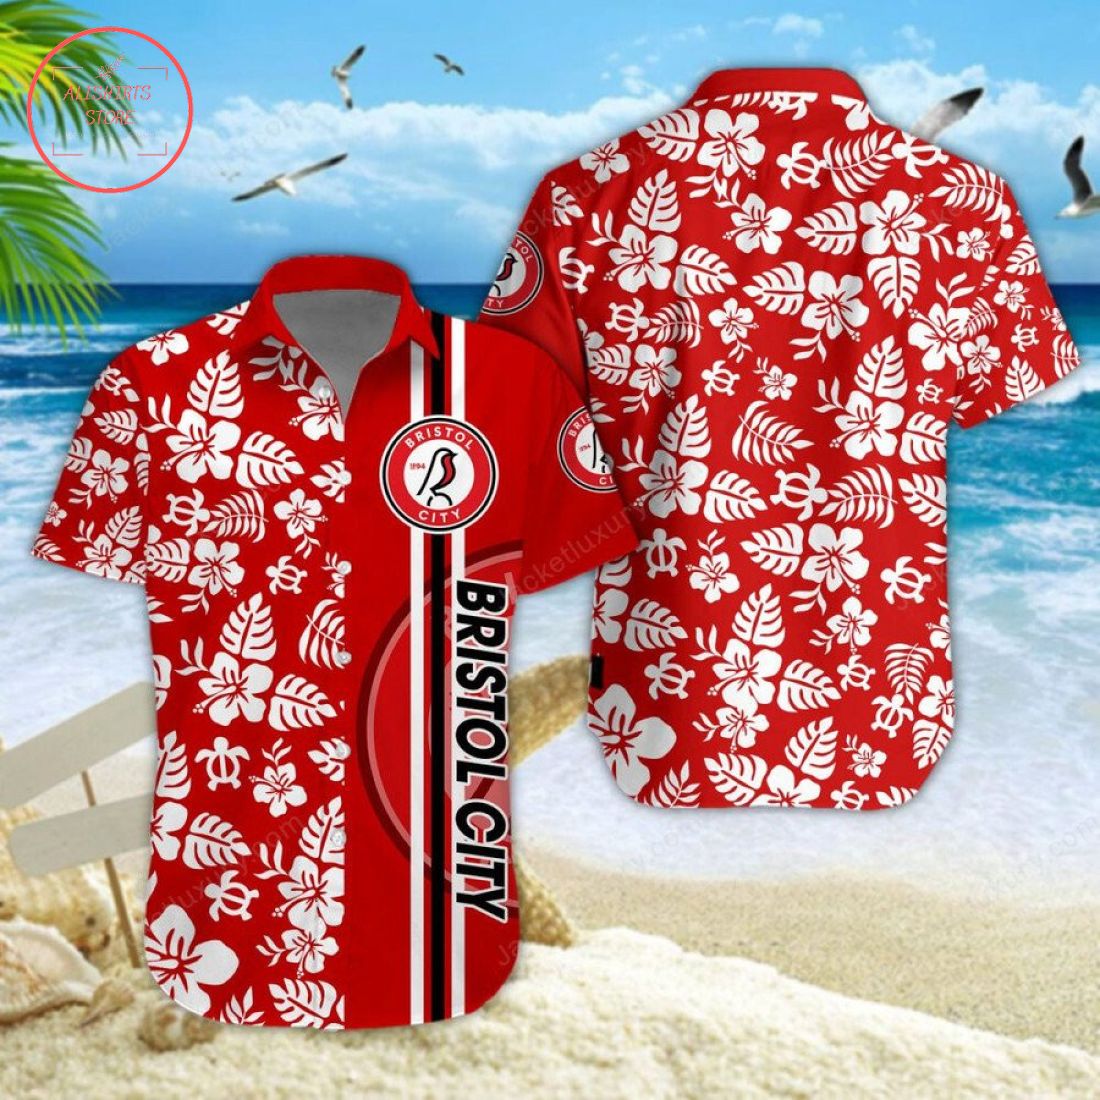 Bristol City Aloha Hawaiian Shirt and Beach Shorts